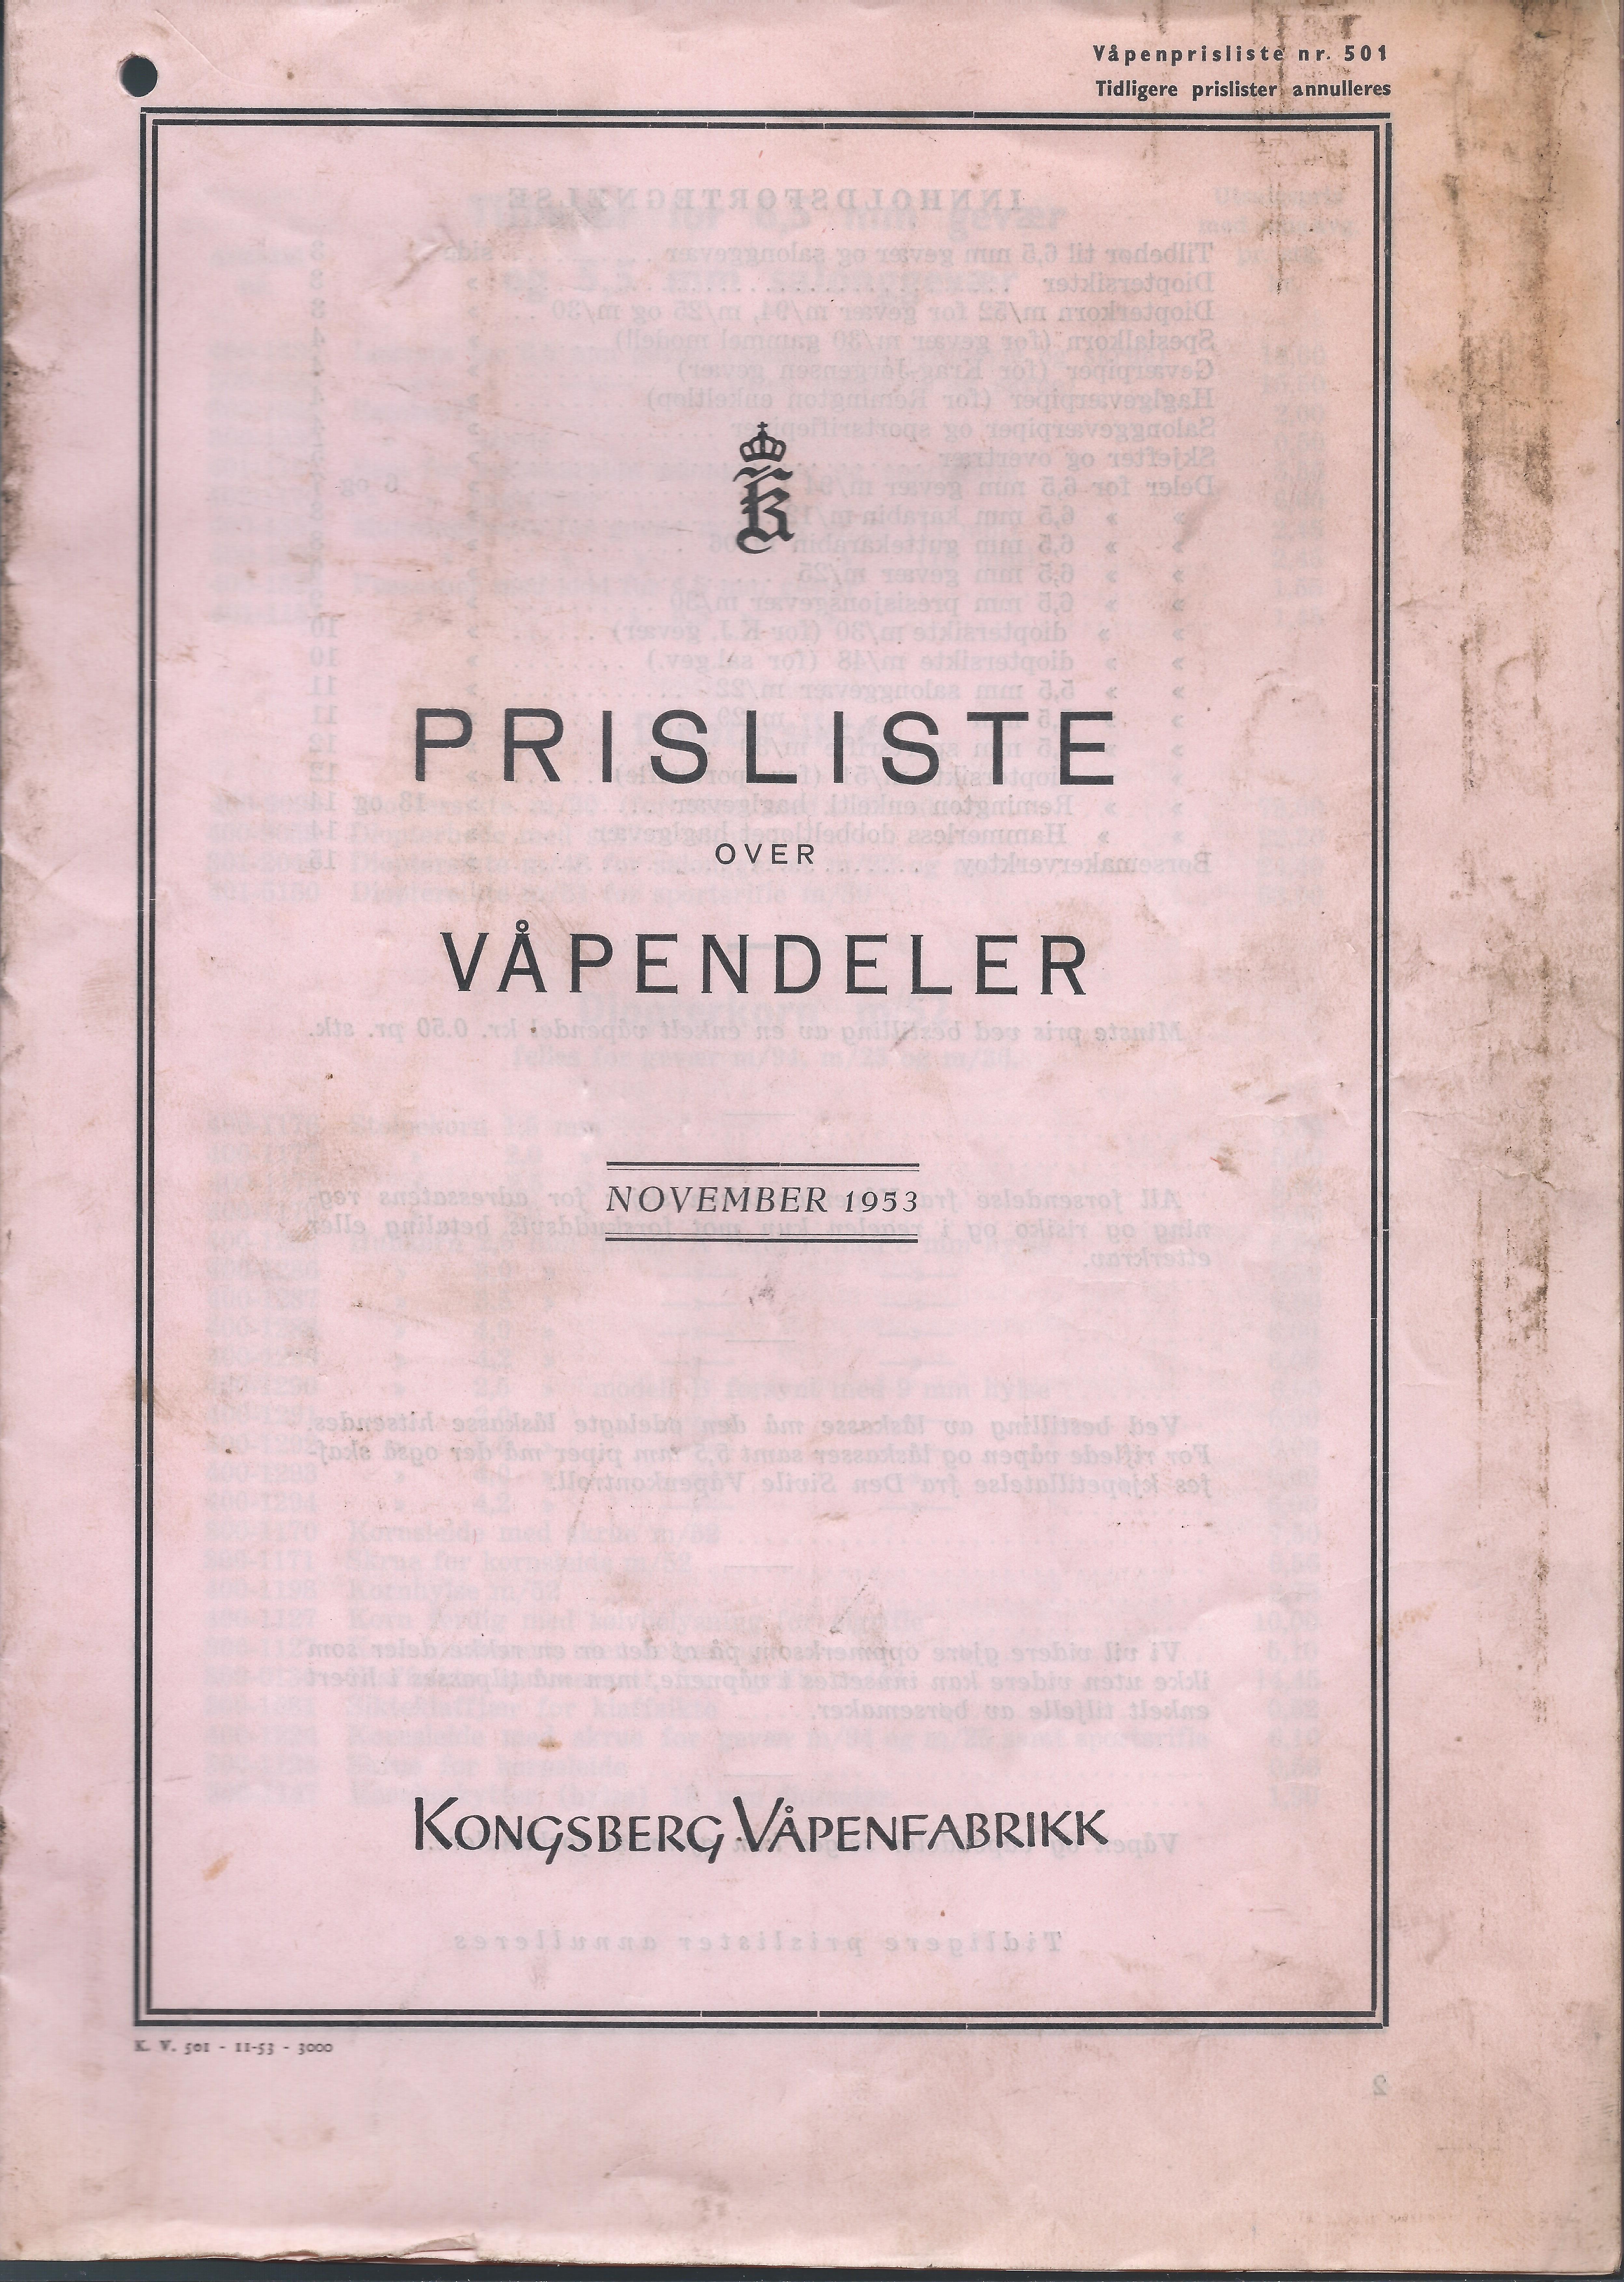 ./doc/KV/KV-Prisliste-Deler-1953-November-1.jpg